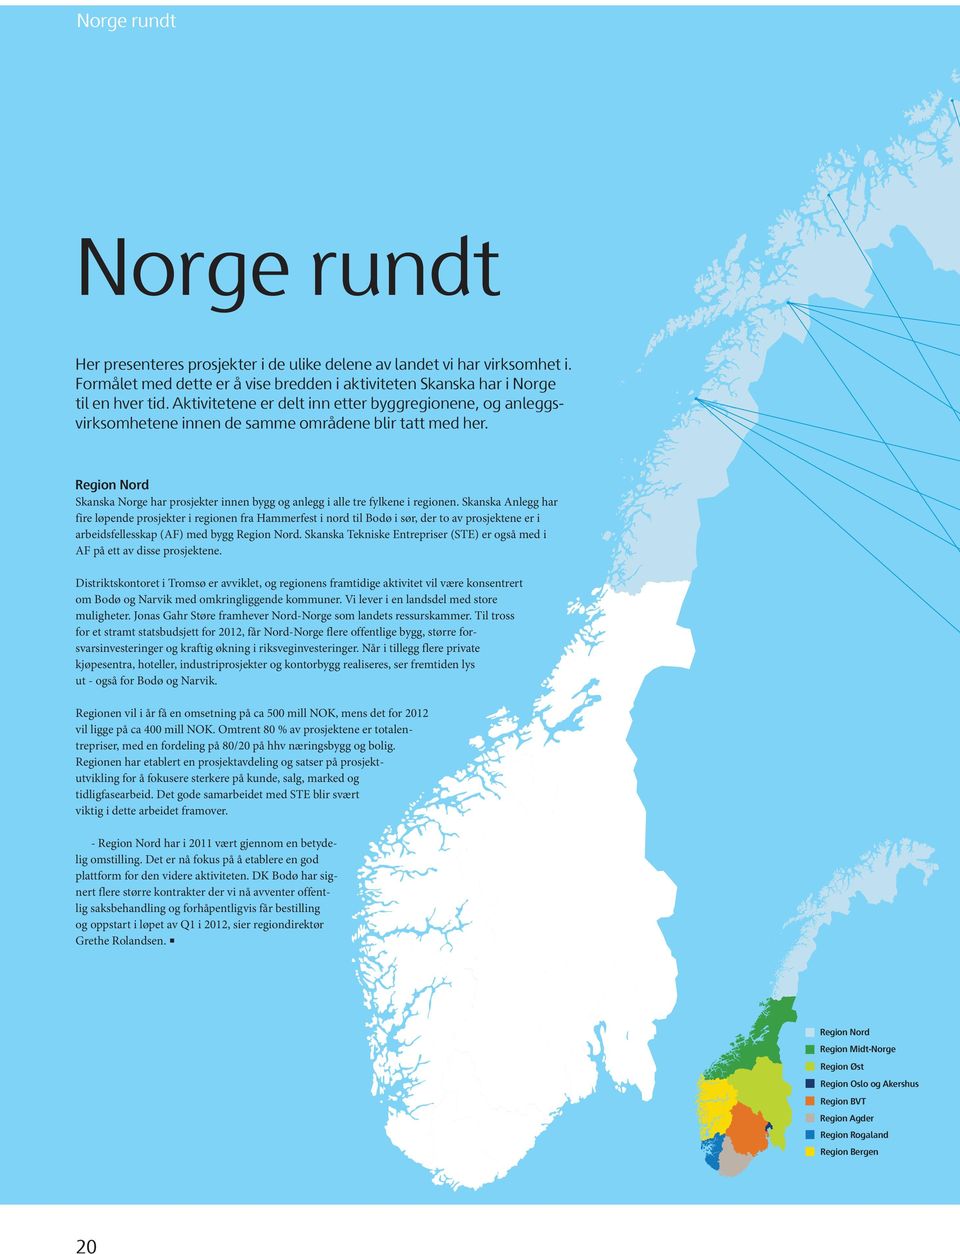 Region Nord Skanska Norge har prosjekter innen bygg og anlegg i alle tre fylkene i regionen.